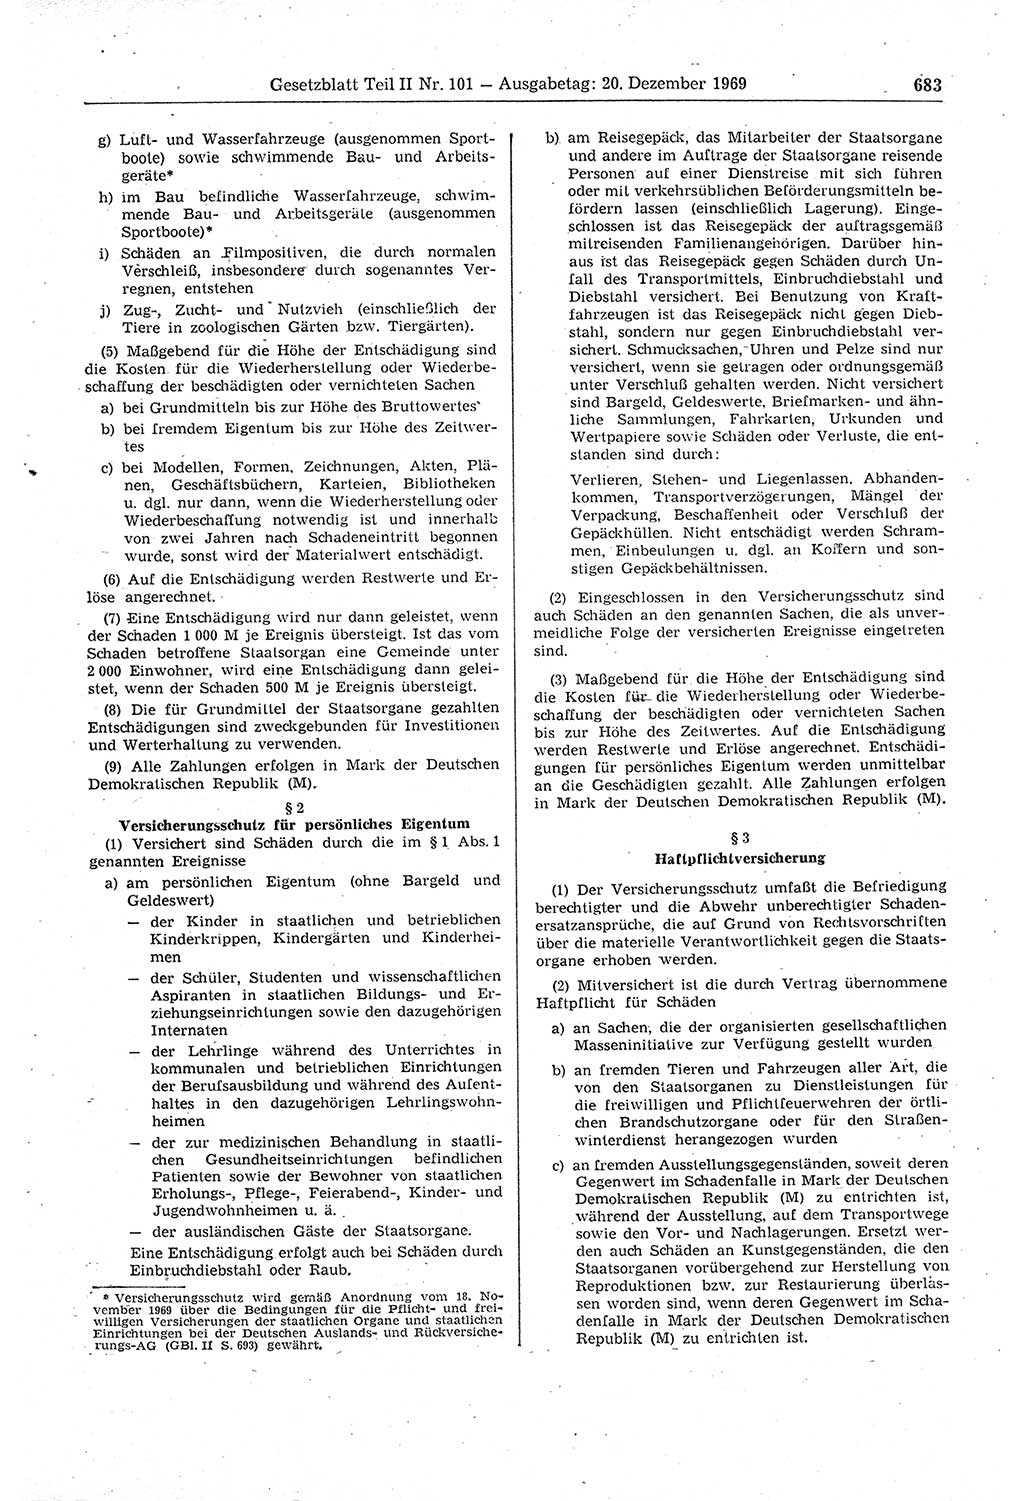 Gesetzblatt (GBl.) der Deutschen Demokratischen Republik (DDR) Teil ⅠⅠ 1969, Seite 683 (GBl. DDR ⅠⅠ 1969, S. 683)